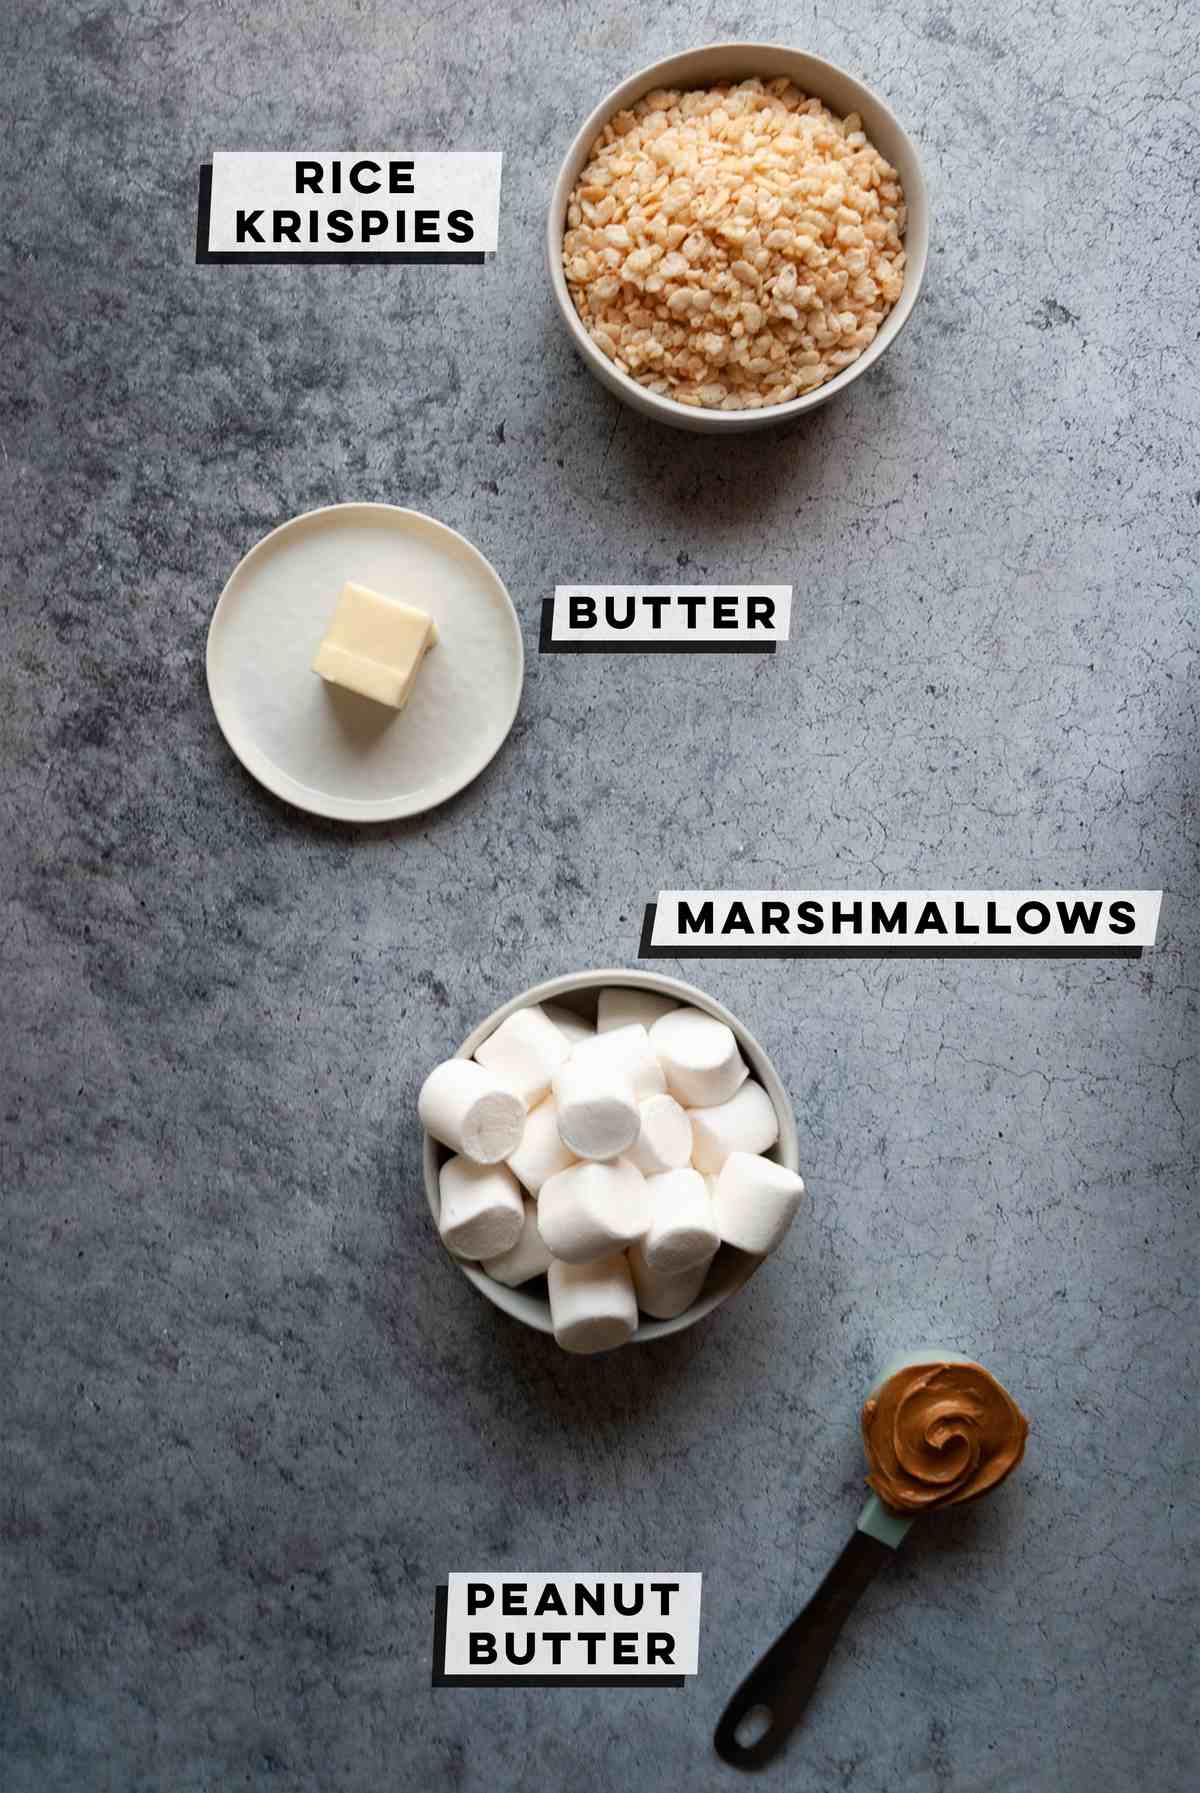 rice krispies, butter, marshmallows, peanut butter